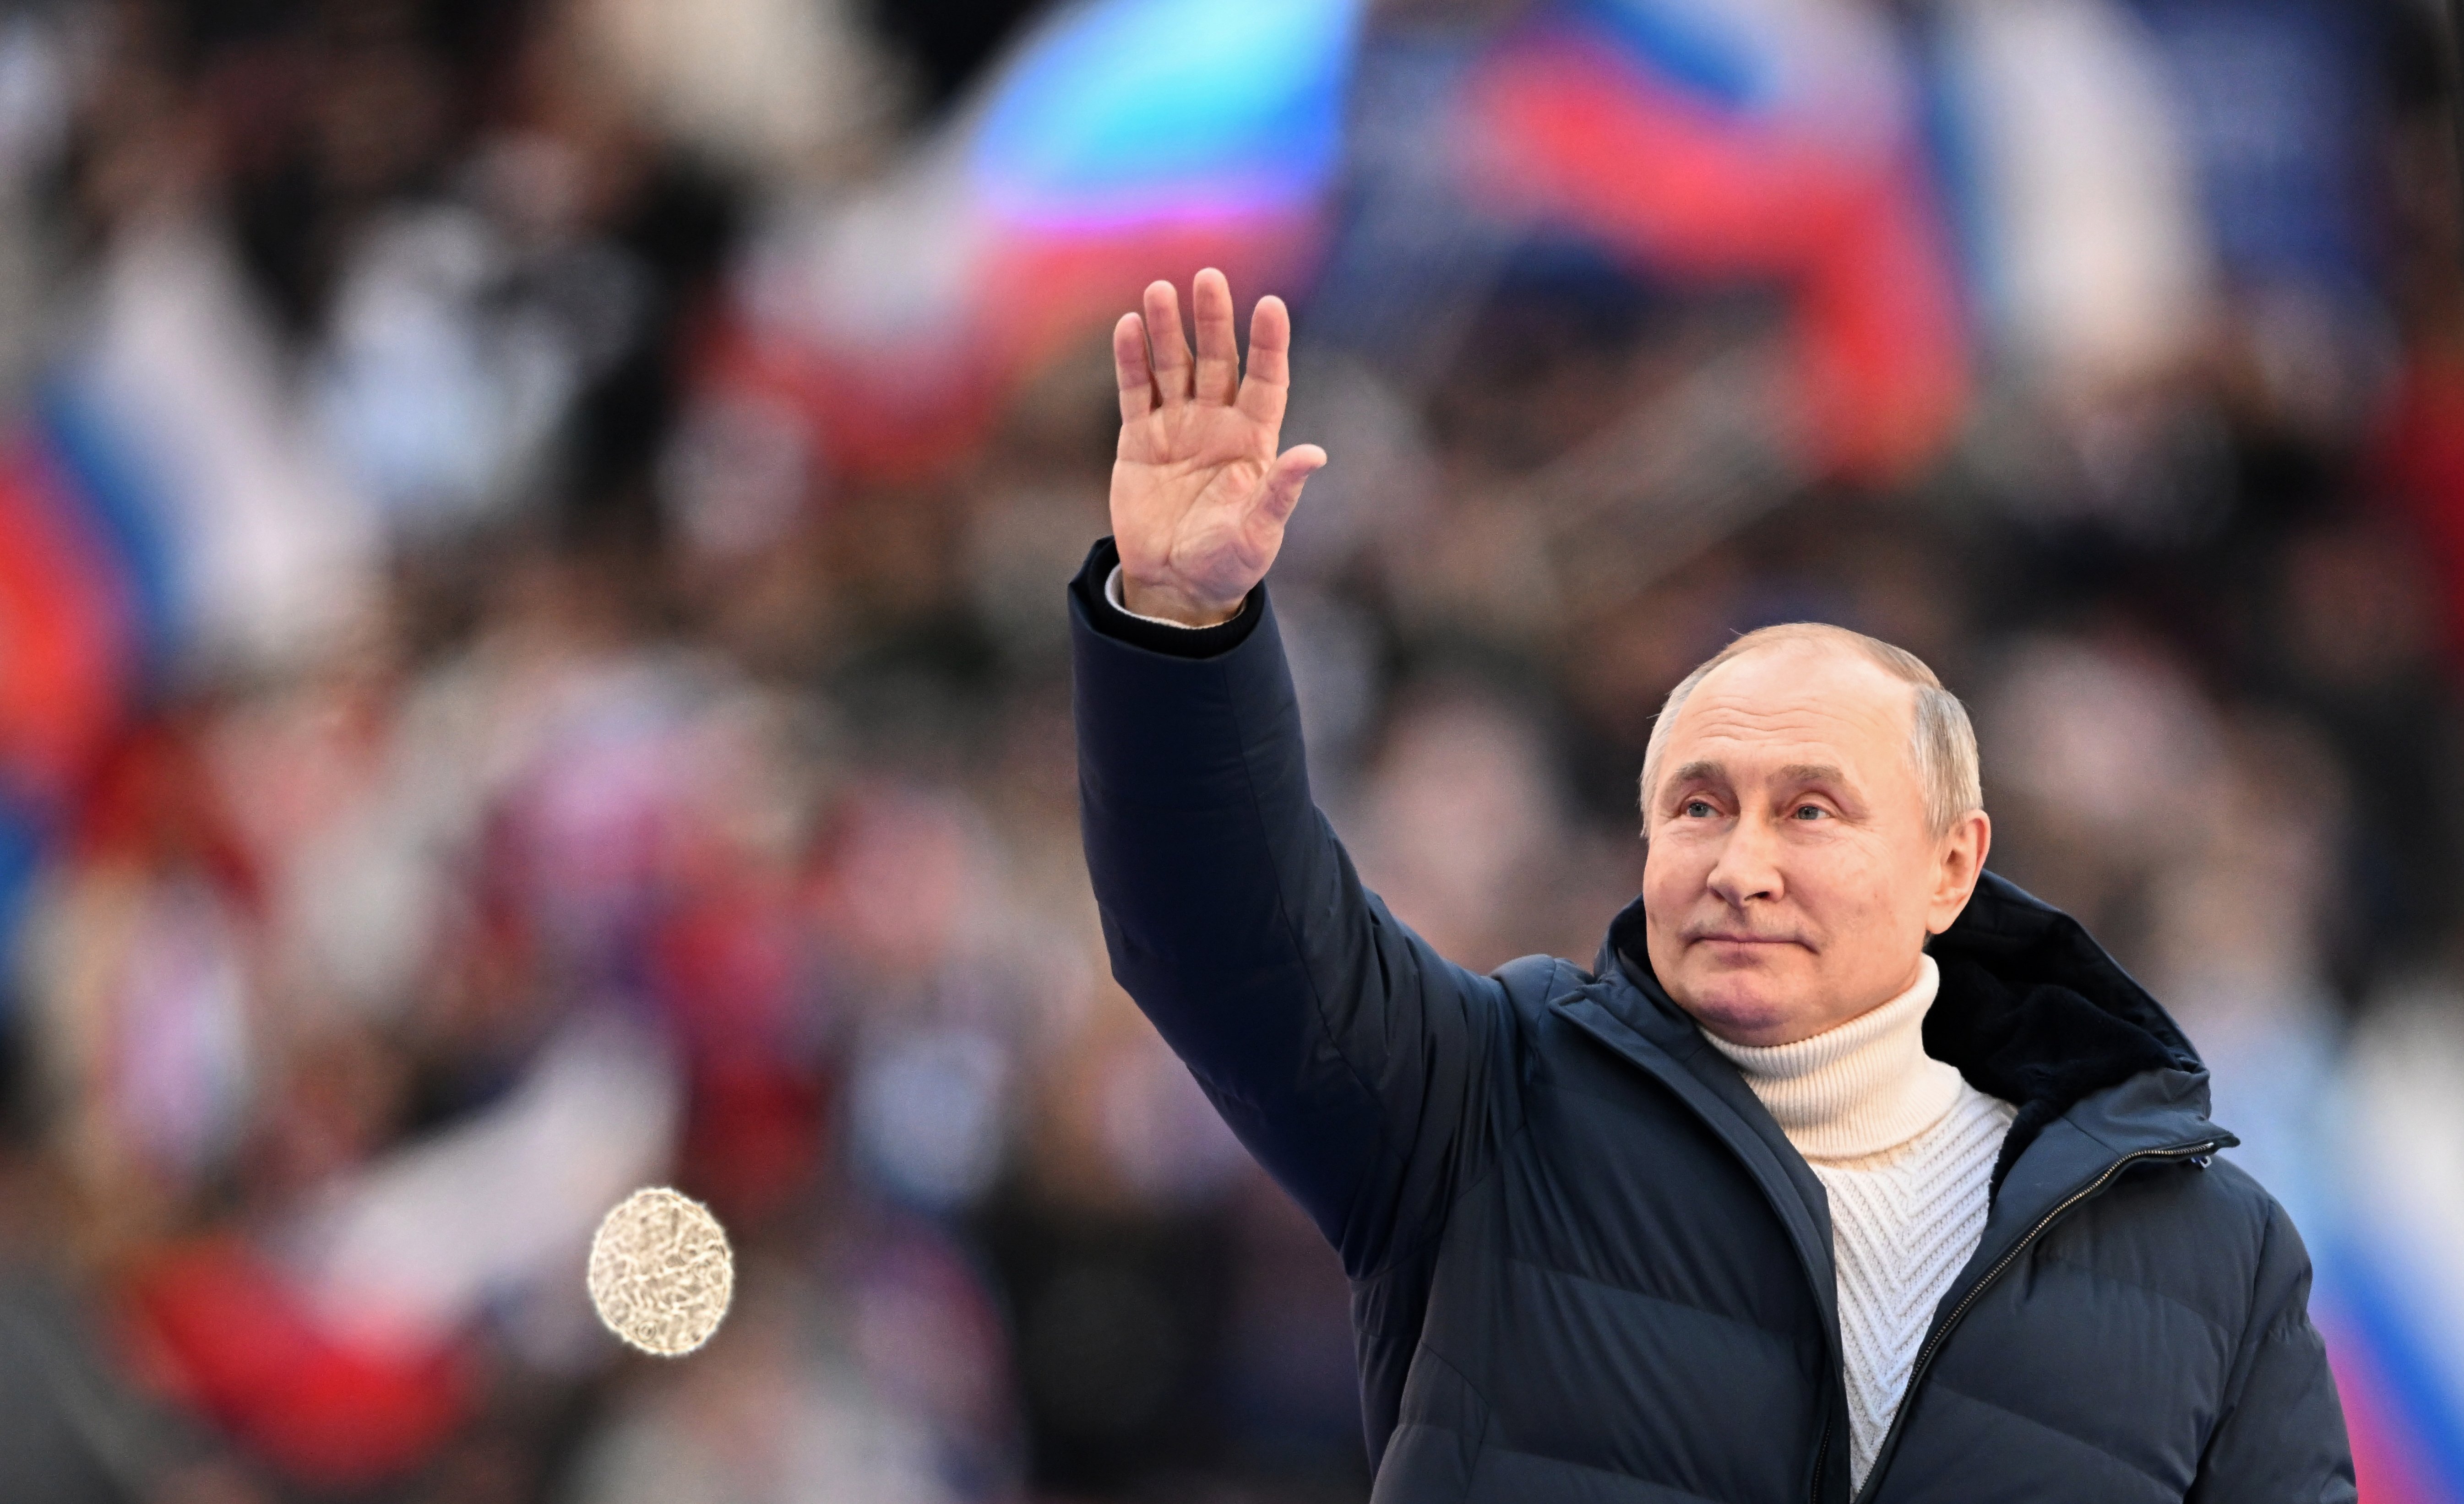 Putin colla els països hostils: hauran de pagar el gas rus en rubles